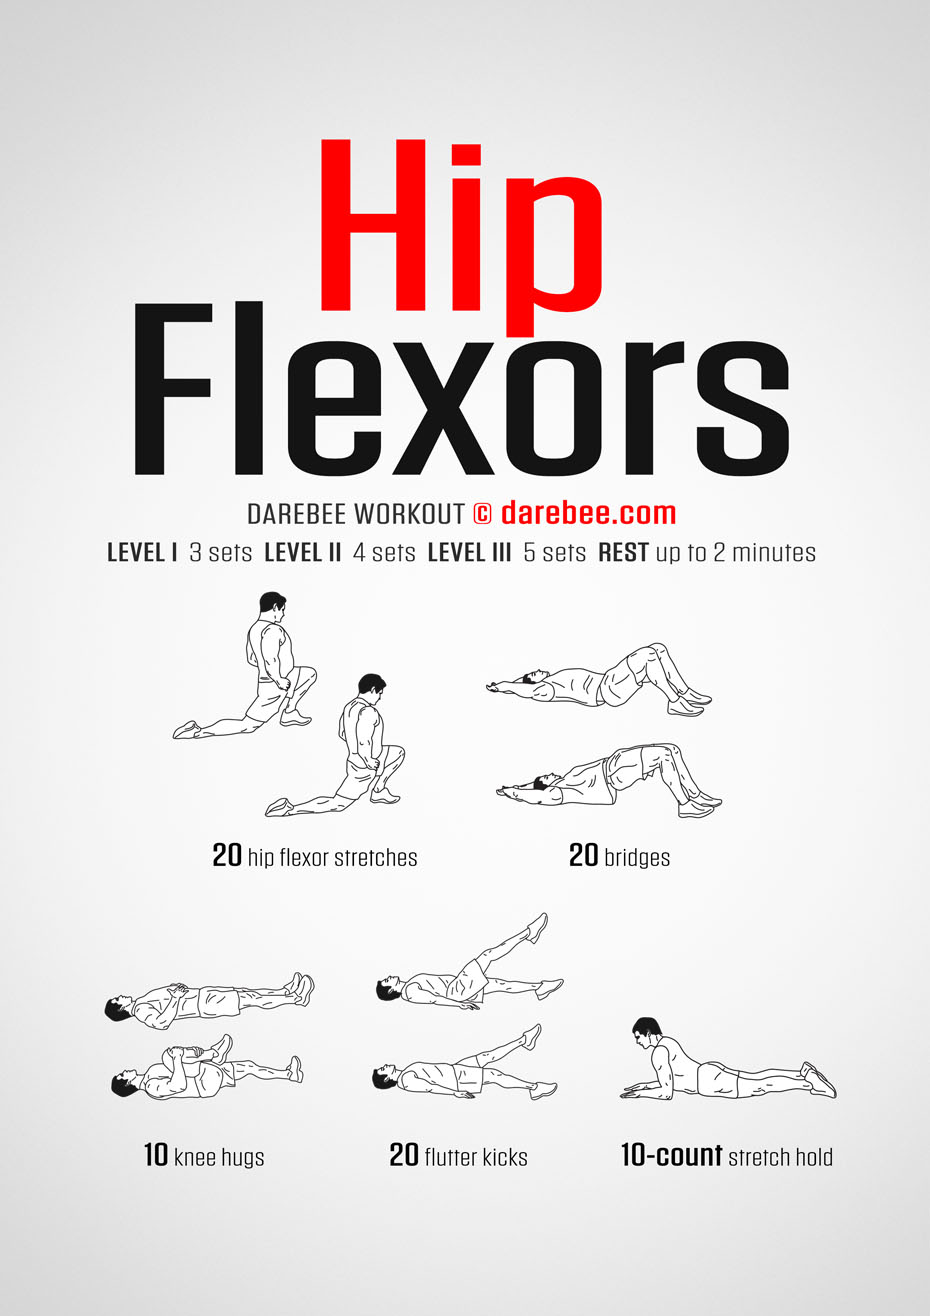 https://darebee.com/images/workouts/hip-flexors-workout.jpg